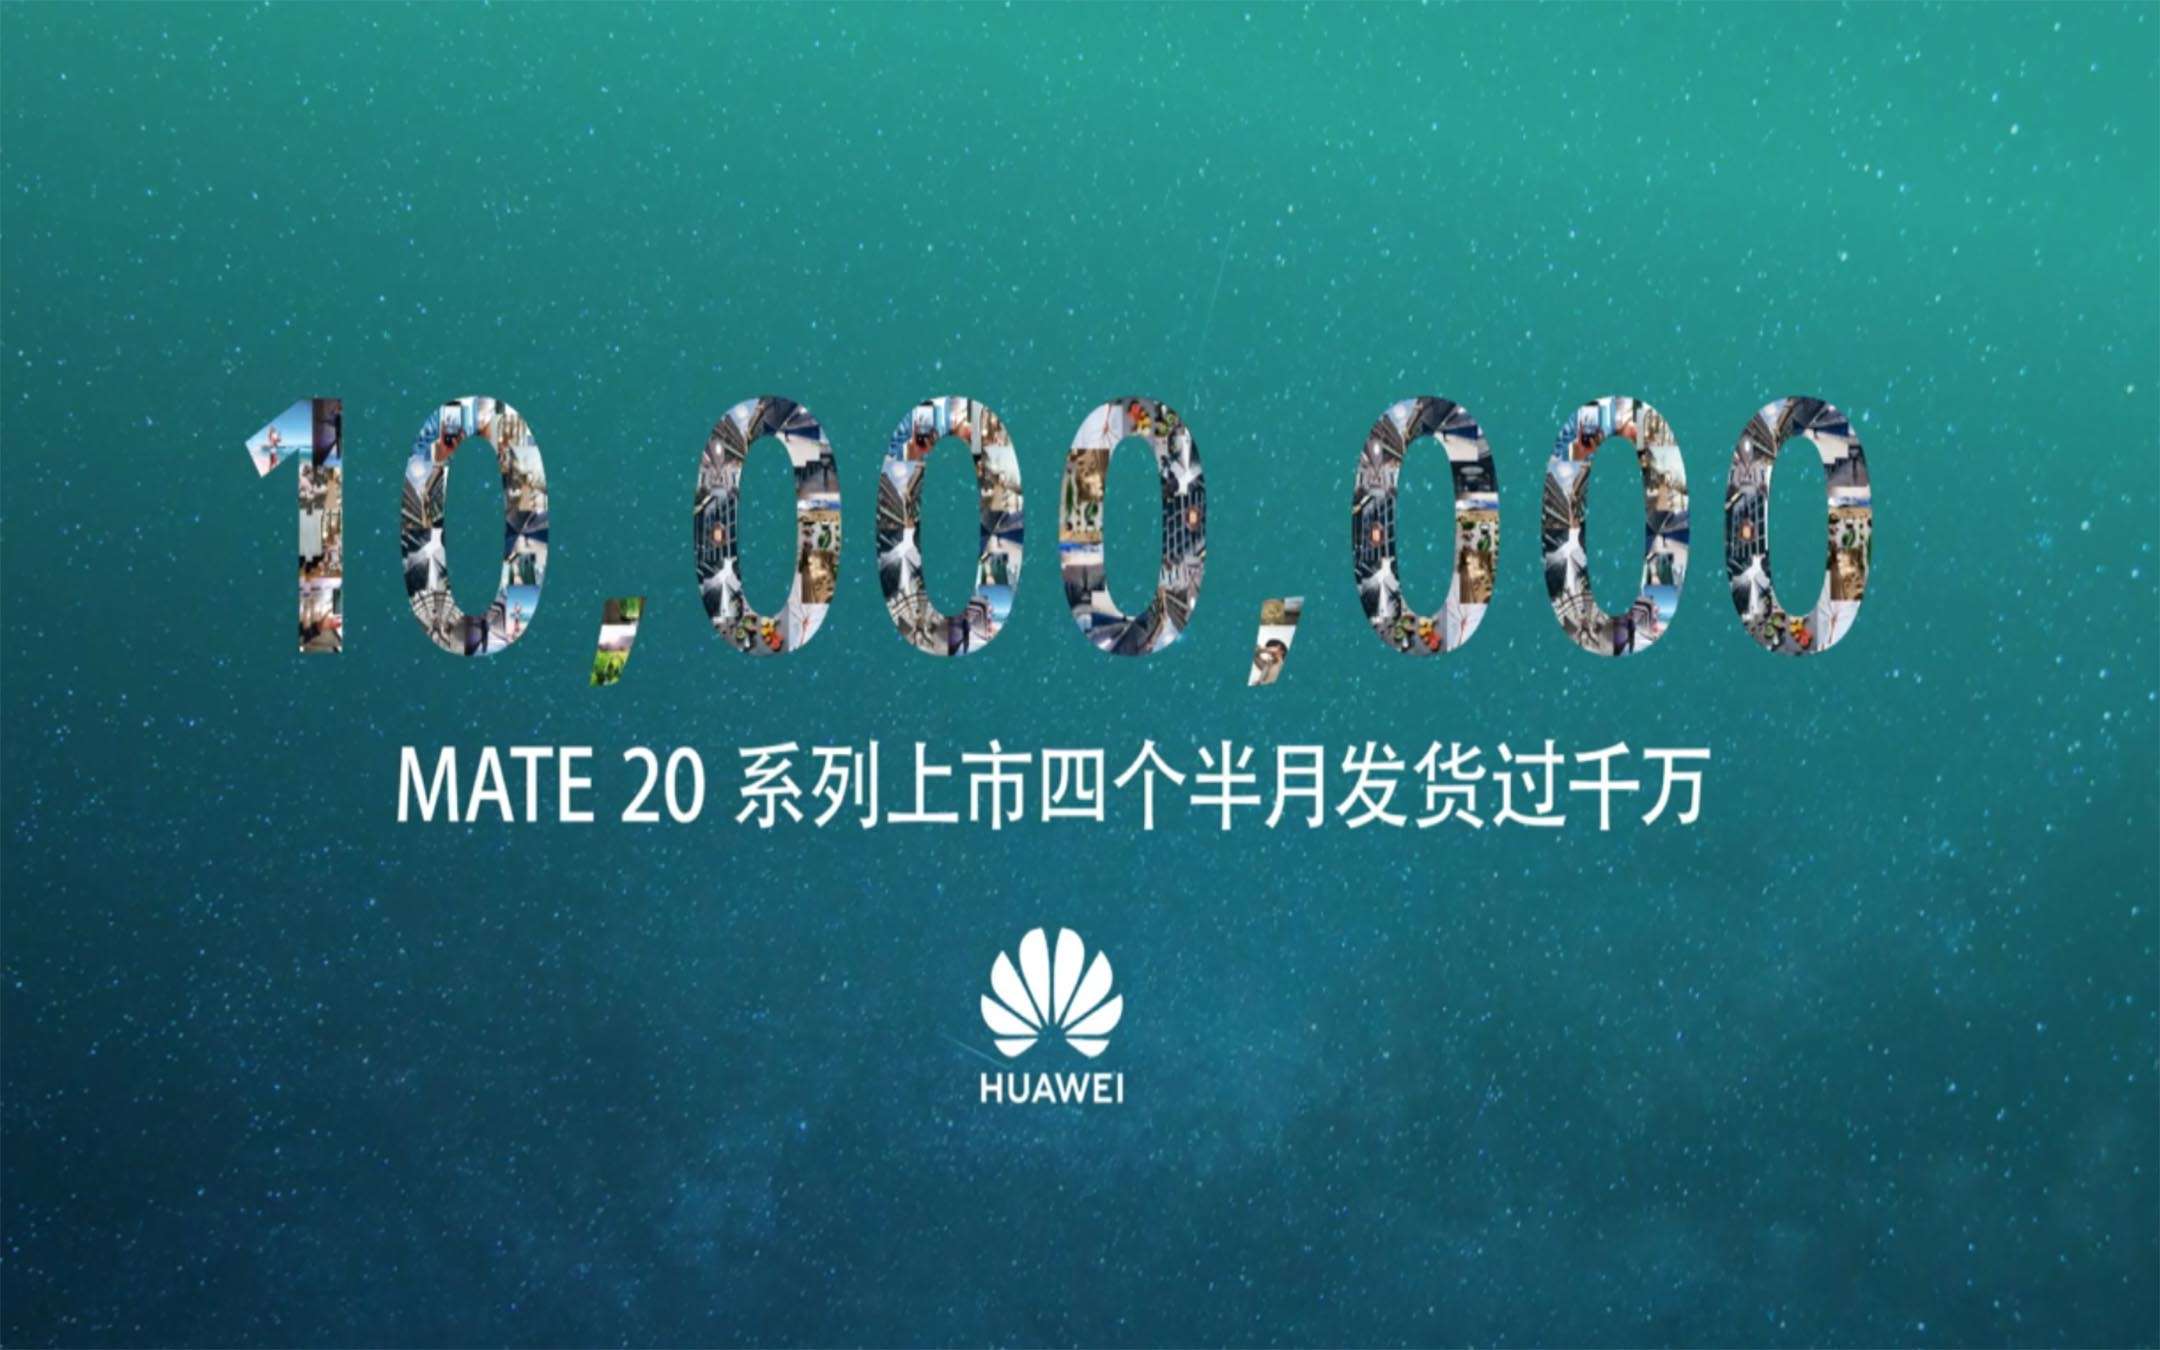 Huawei Mate 20 supera 10 milioni di spedizioni